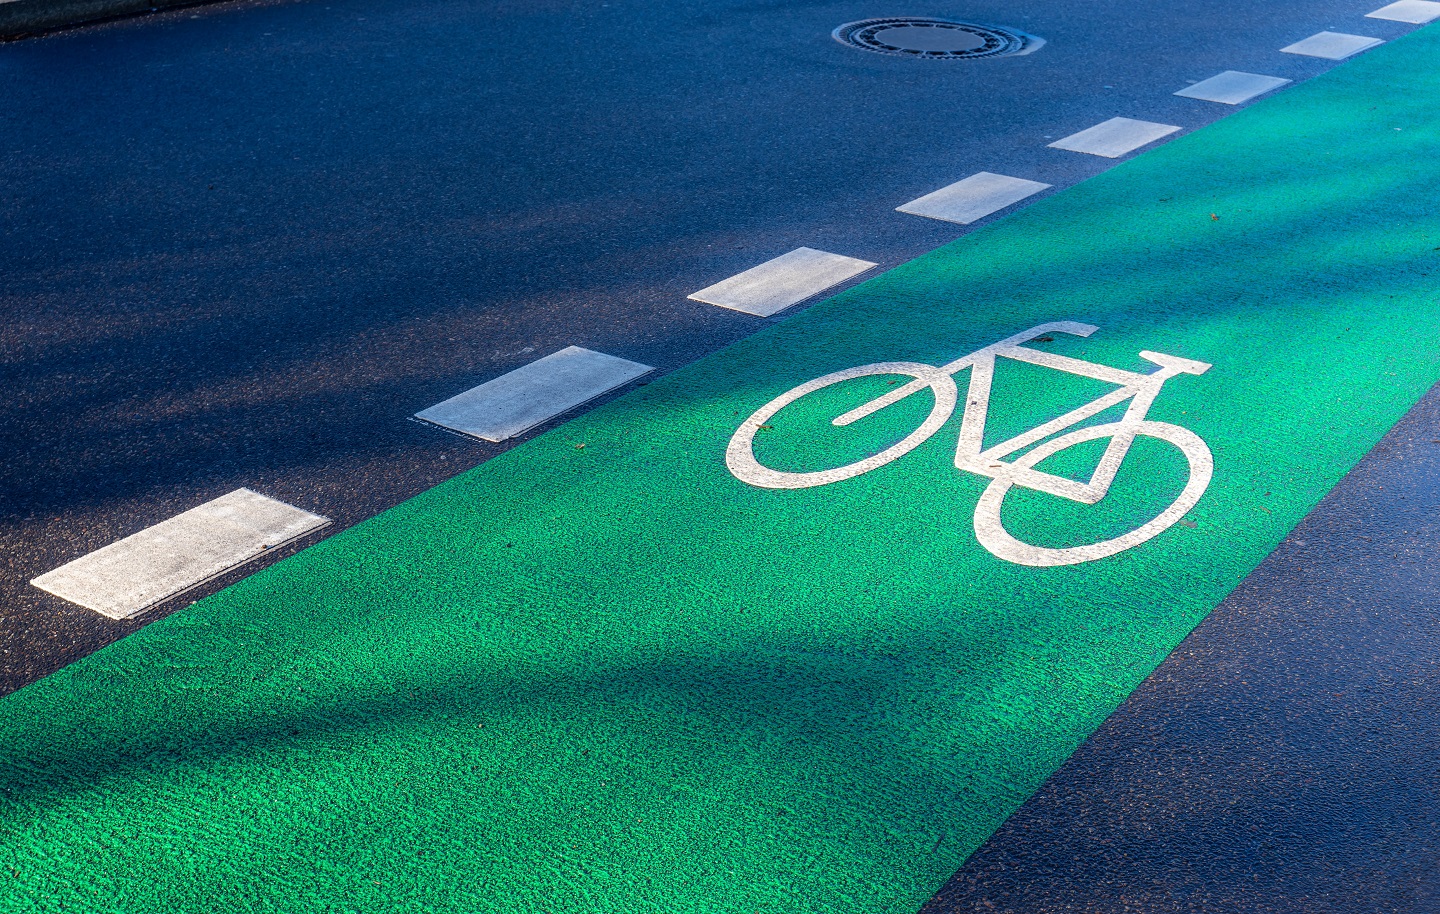 Zu sehen ist ein in grün eingezeichneter Fahrradweg auf einer Straße